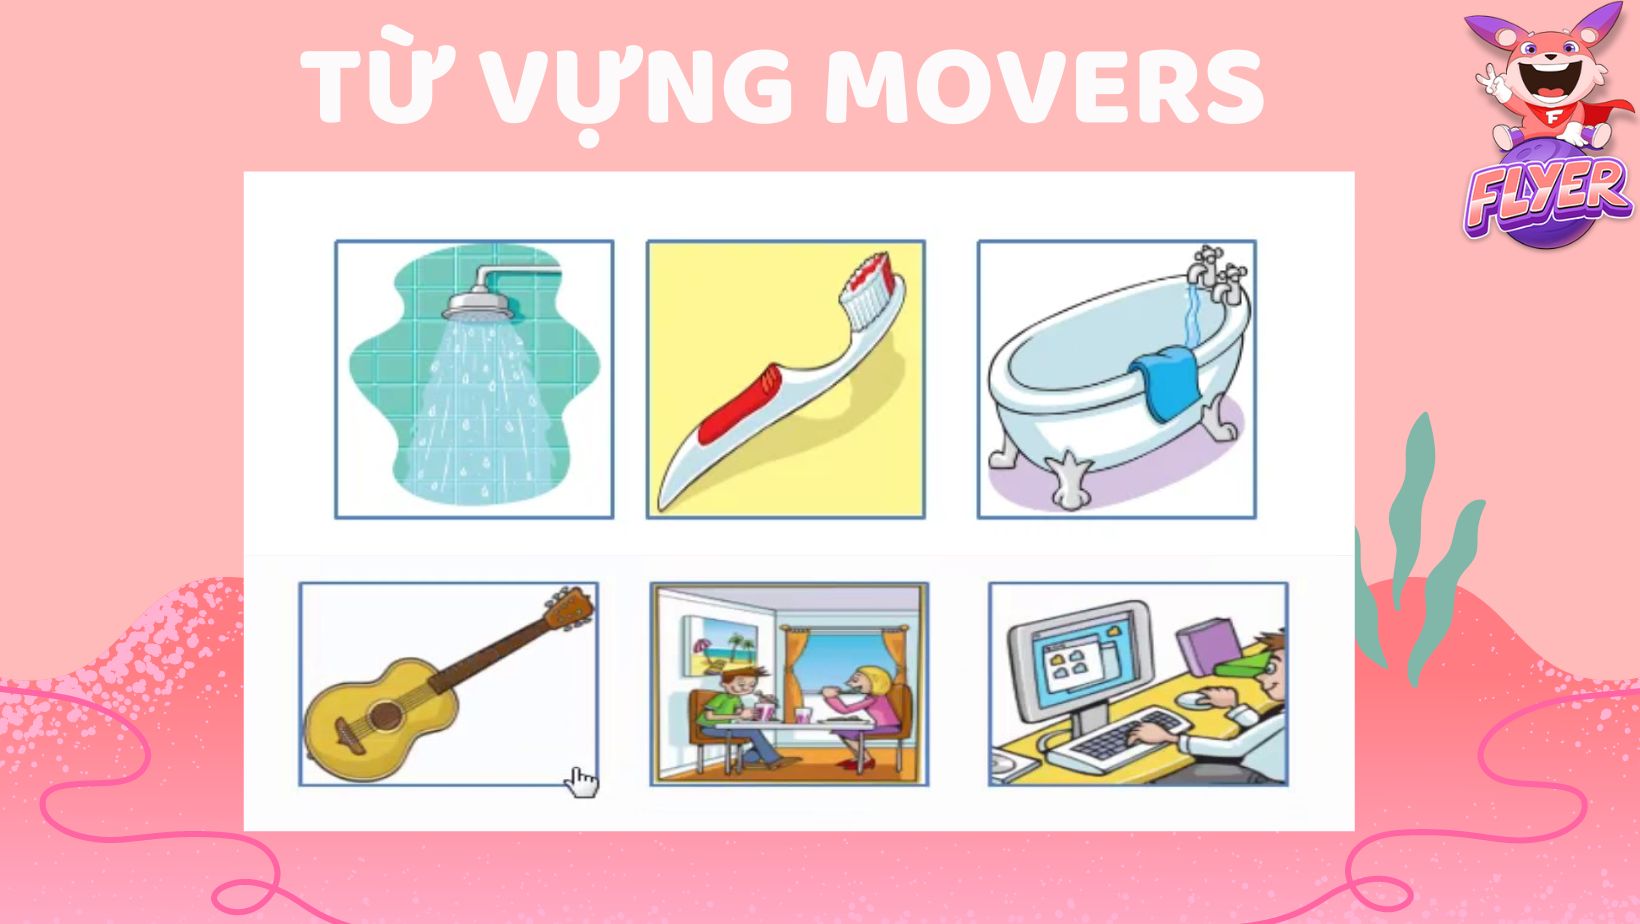 Từ vựng Movers theo chủ đề nhà cửa và các vật dụng trong nhà